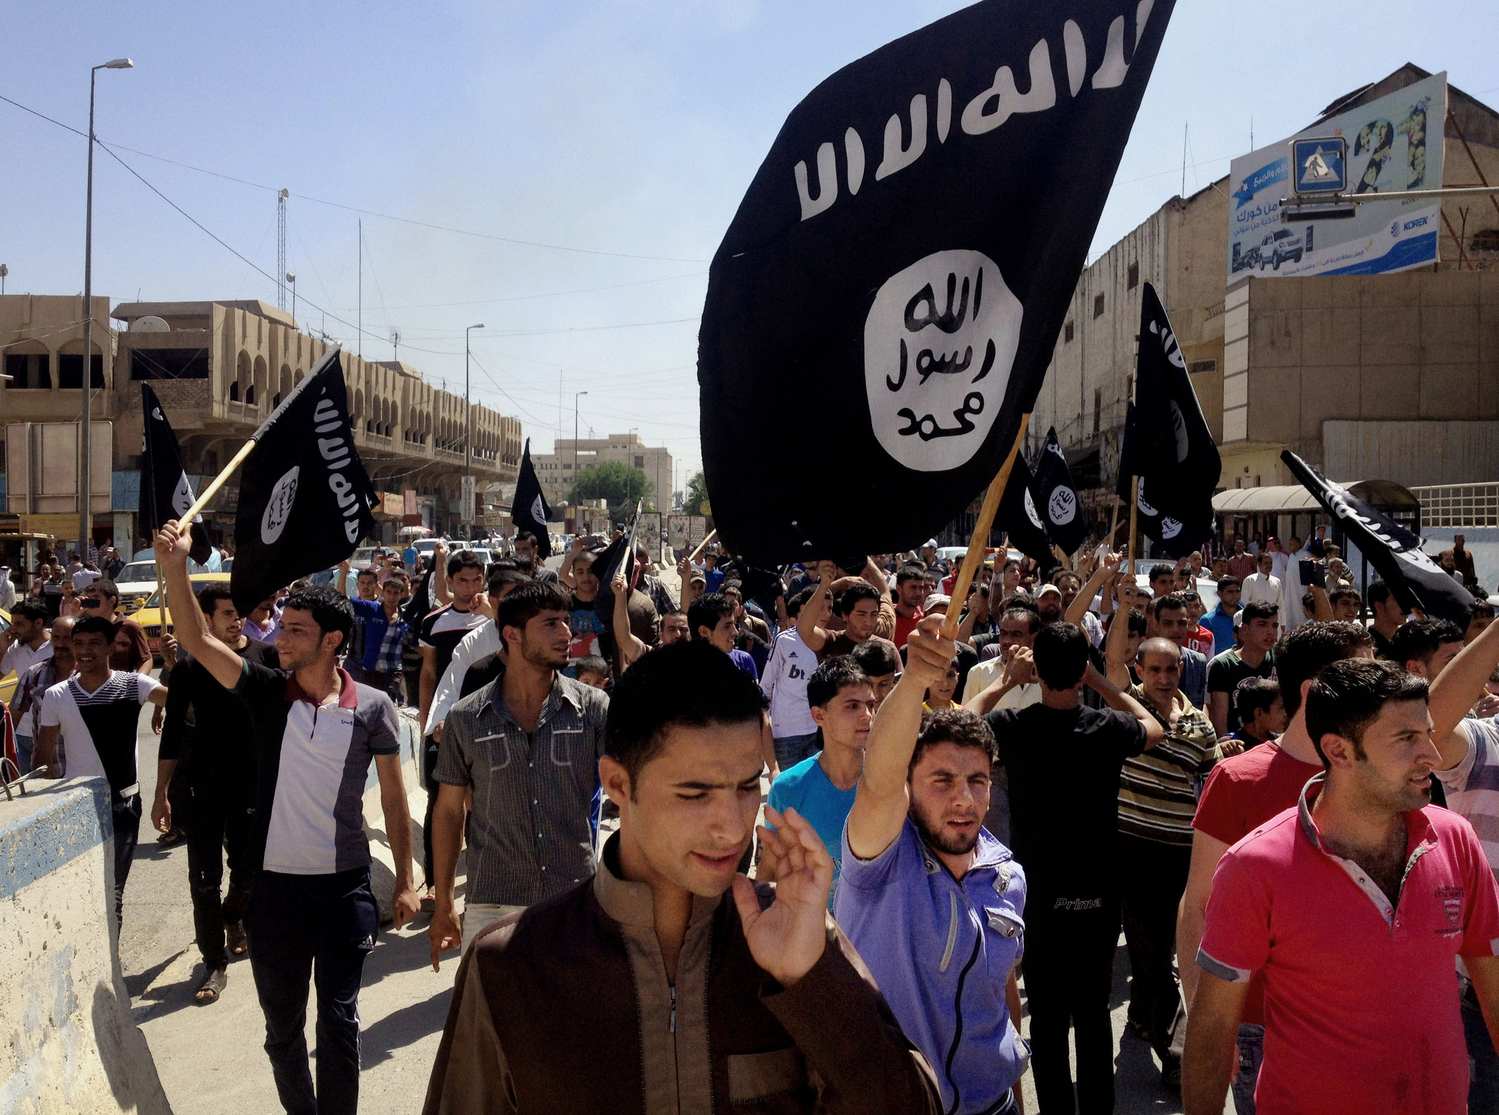 Sympatizanti Islámského státu protestují v Mosulu, severozápadně od Bagdádu.